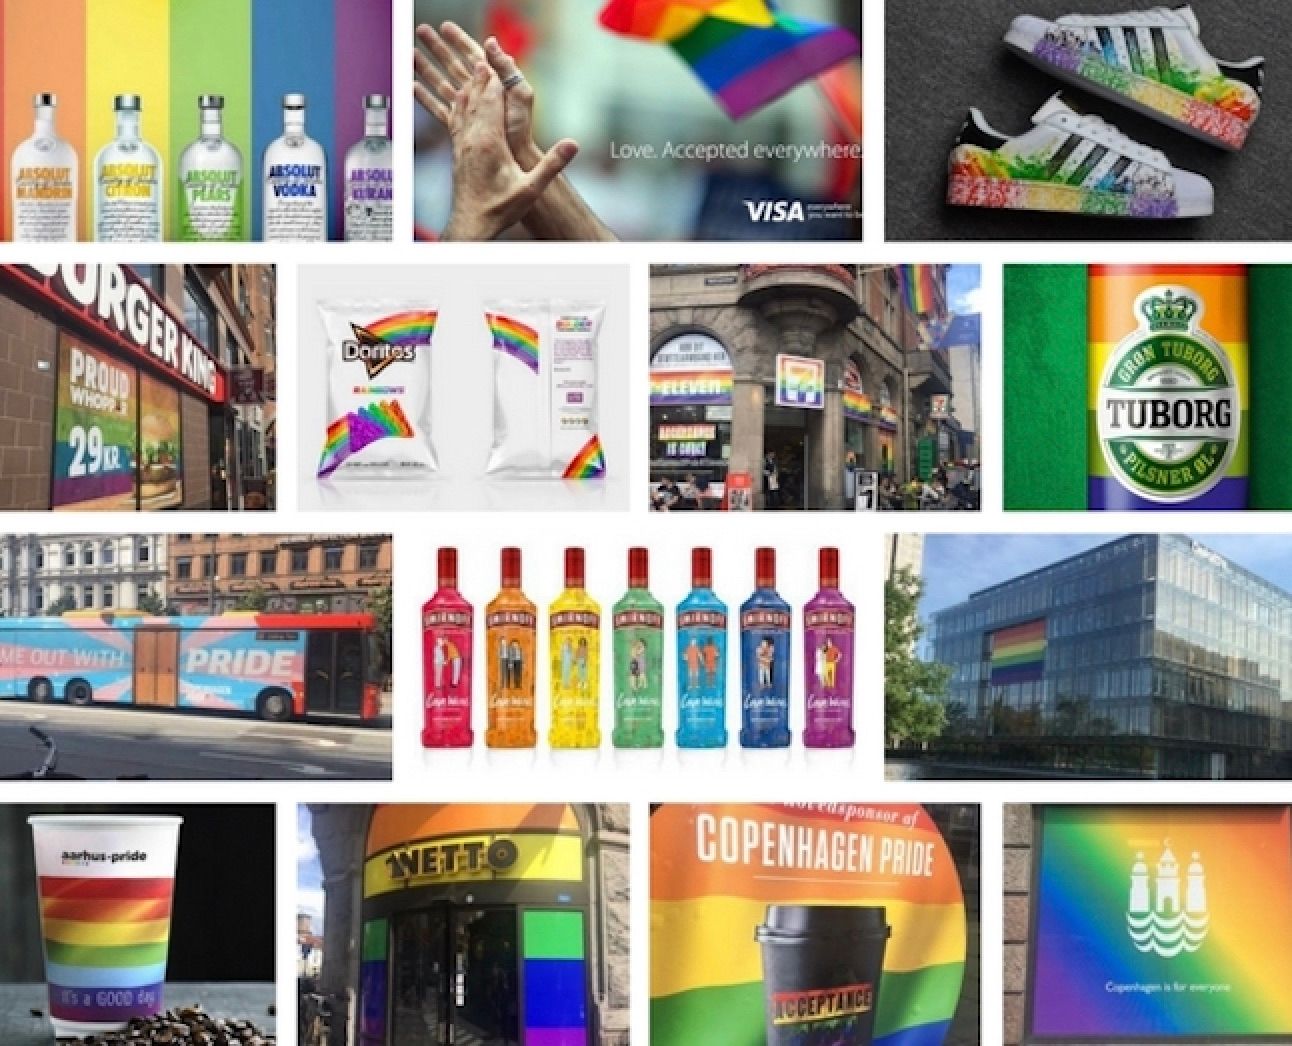 Pridewashing sker, når virksomheder markedsfører deres brand eller produkt ved at fremstå som LGBTQ+-venlige uden at udvise det i deres CSR eller kerneværdier. Kilde: Giphy.com.